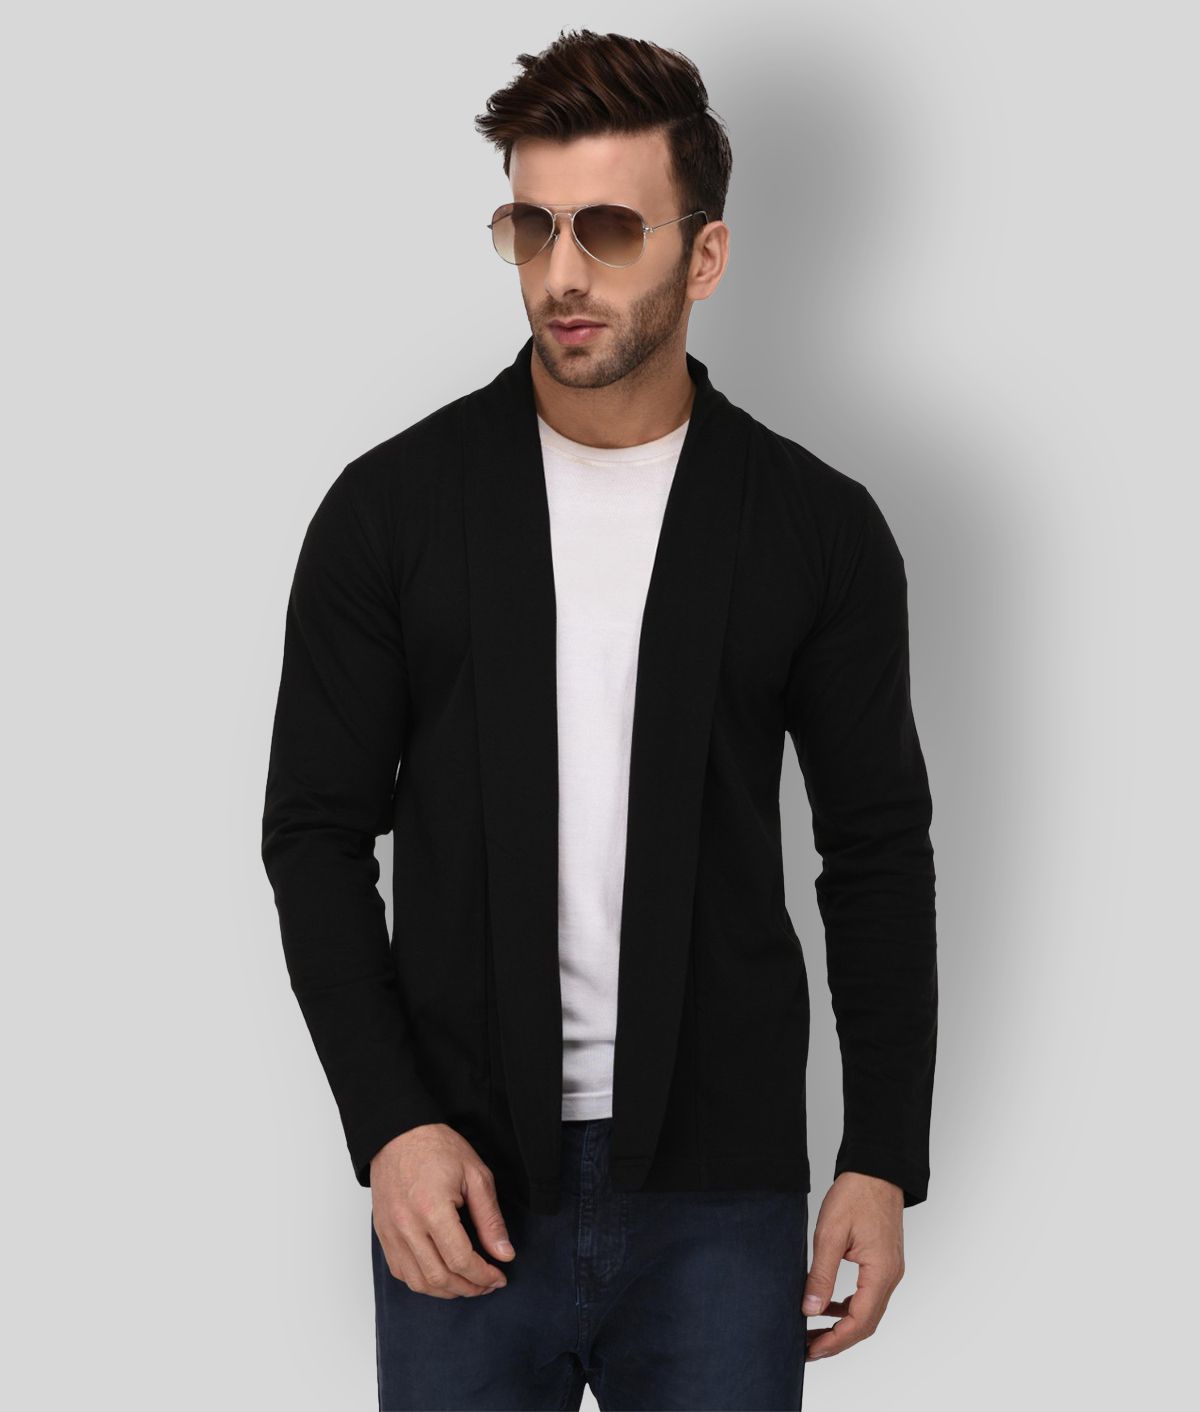     			Rigo - Black Cotton Men's Cardigans Sweater ( Pack of 1 )